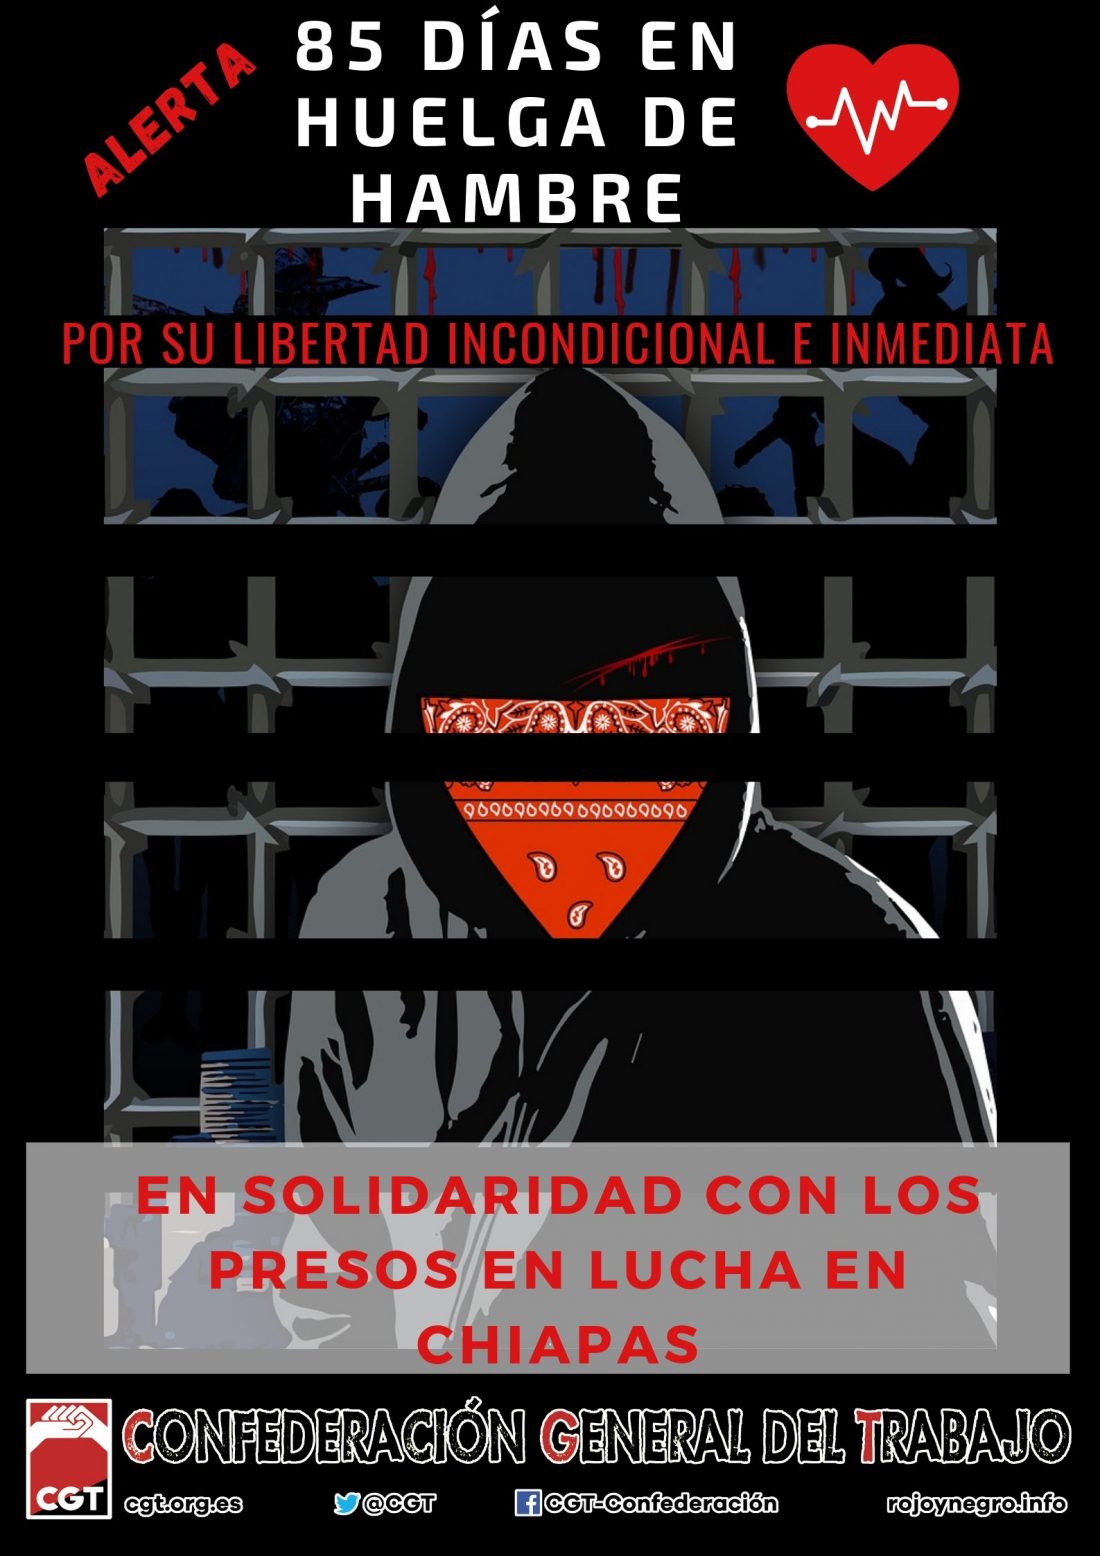 Campaña de solidaridad con los presos en huelga de hambre en Chiapas